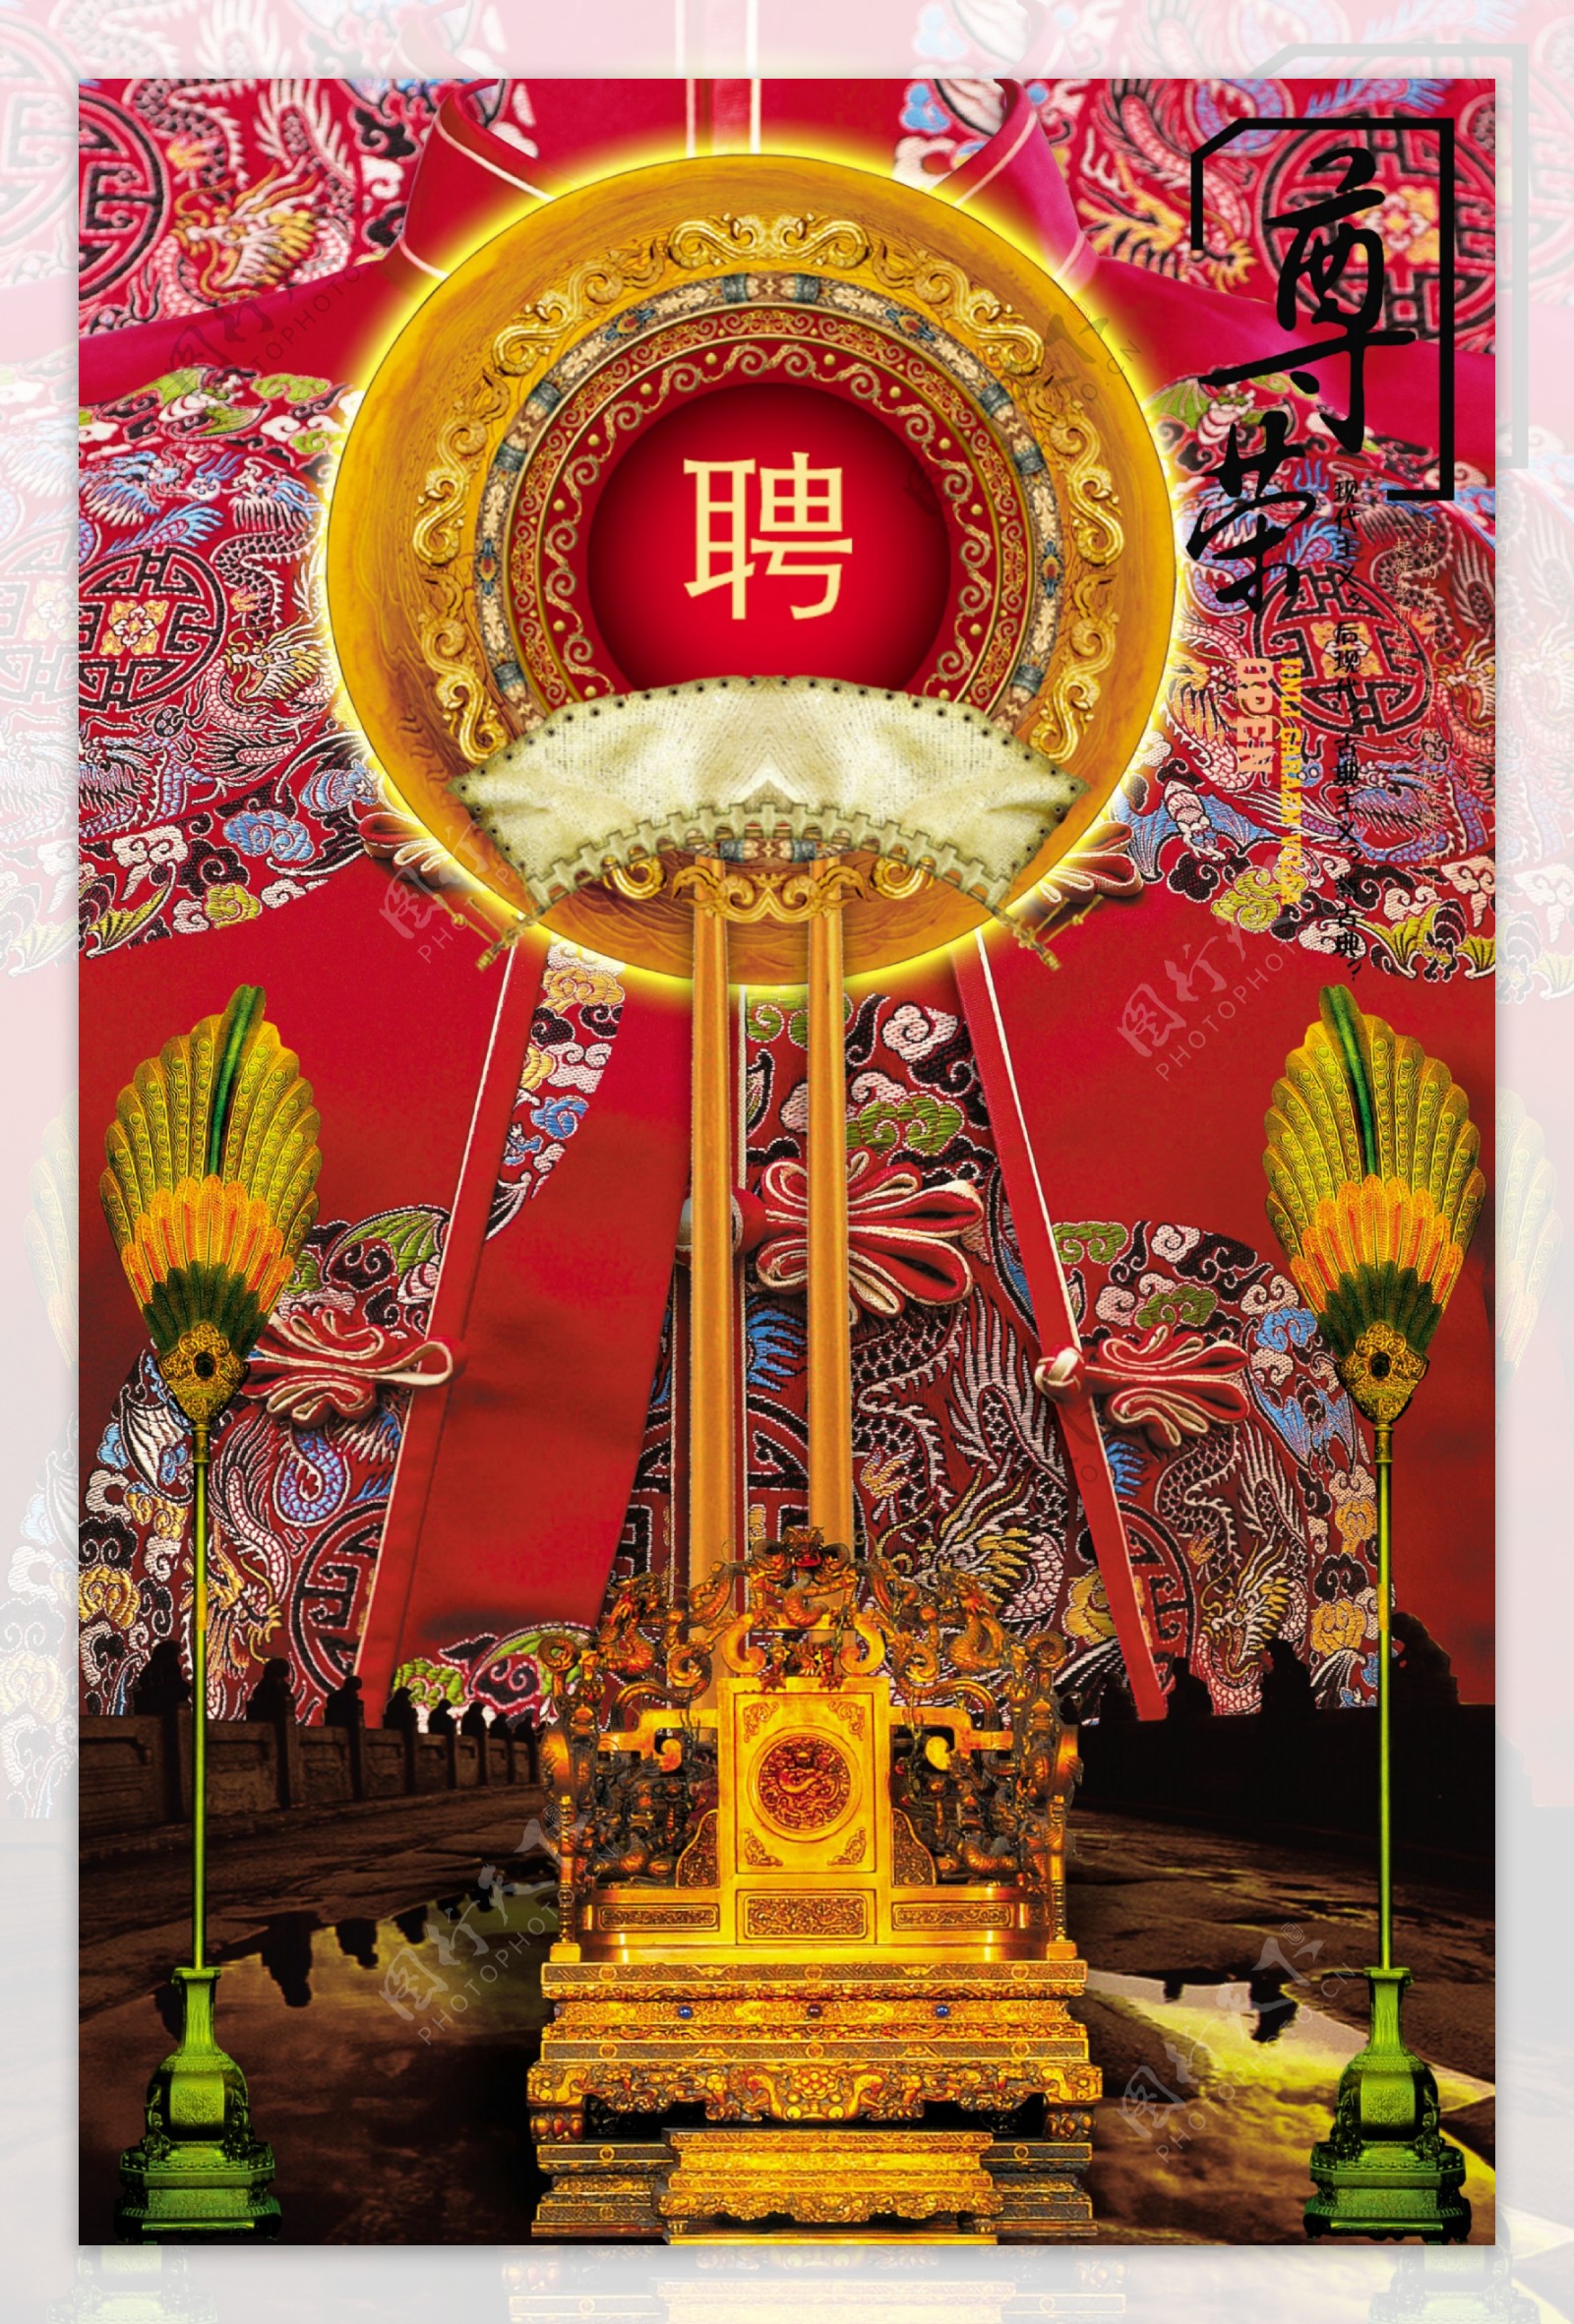 中国风系列之皇座篇图片